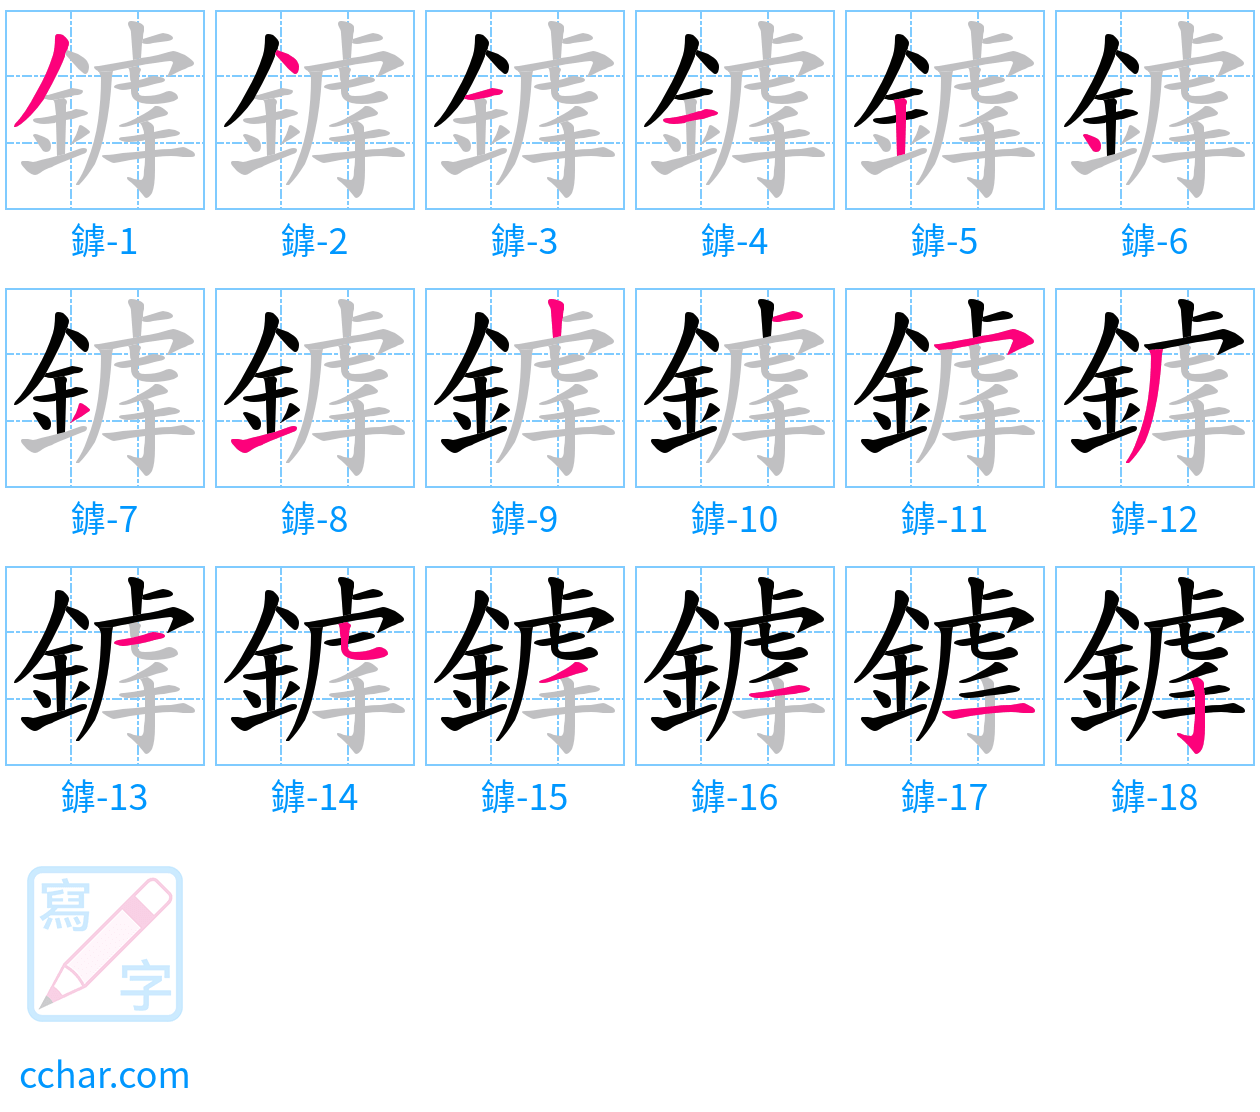 鎼 stroke order step-by-step diagram